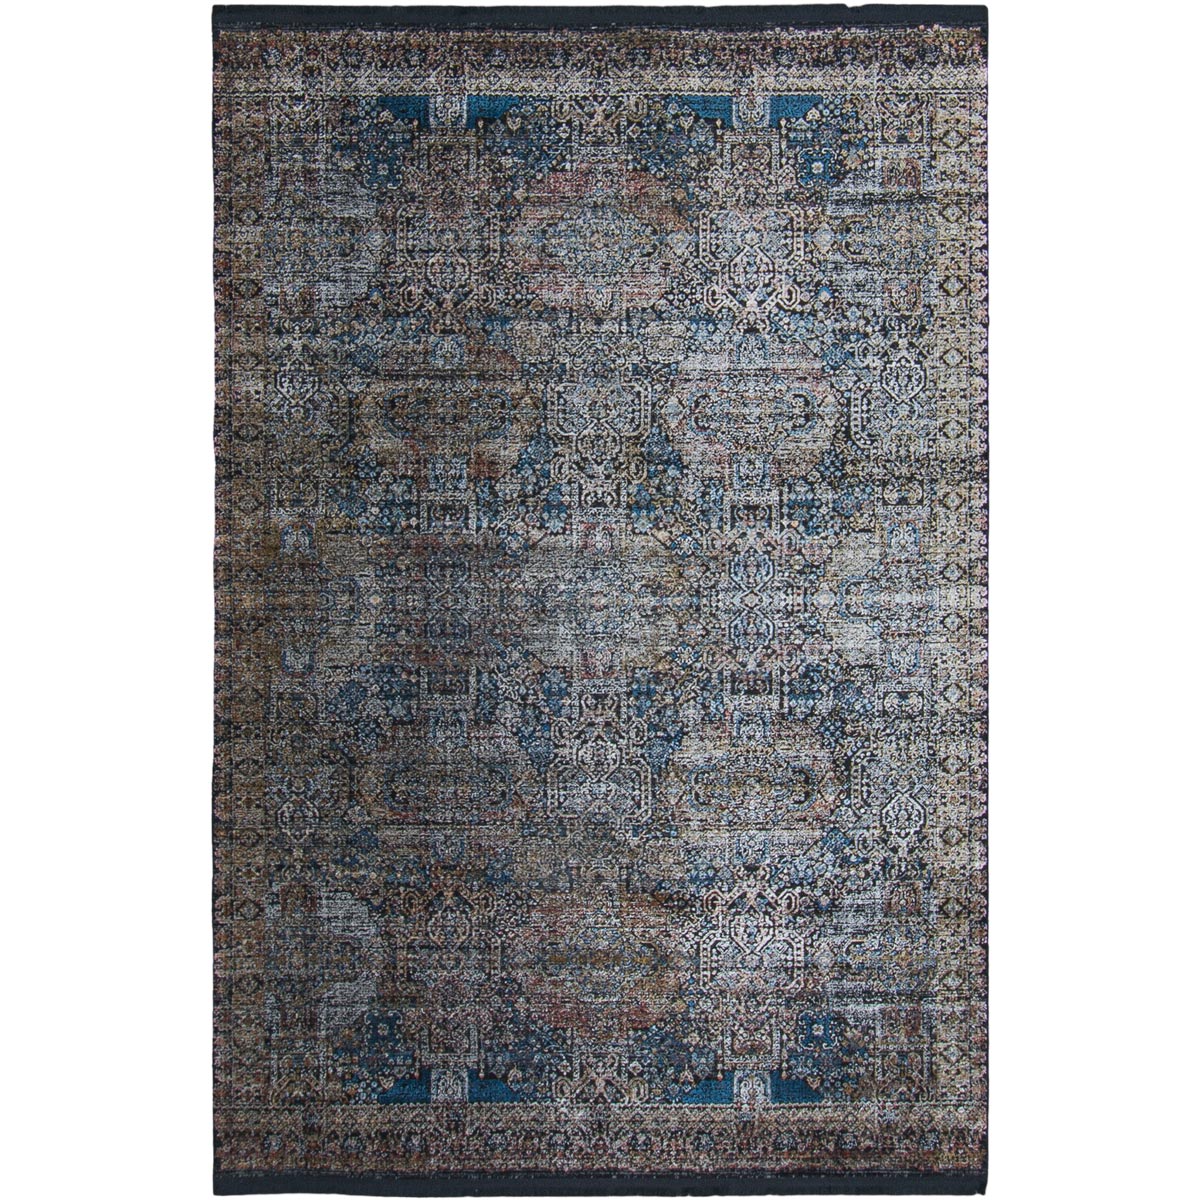 שטיח אלכסנדריה 03 צבעוני עם פרנזים | השטיח האדום